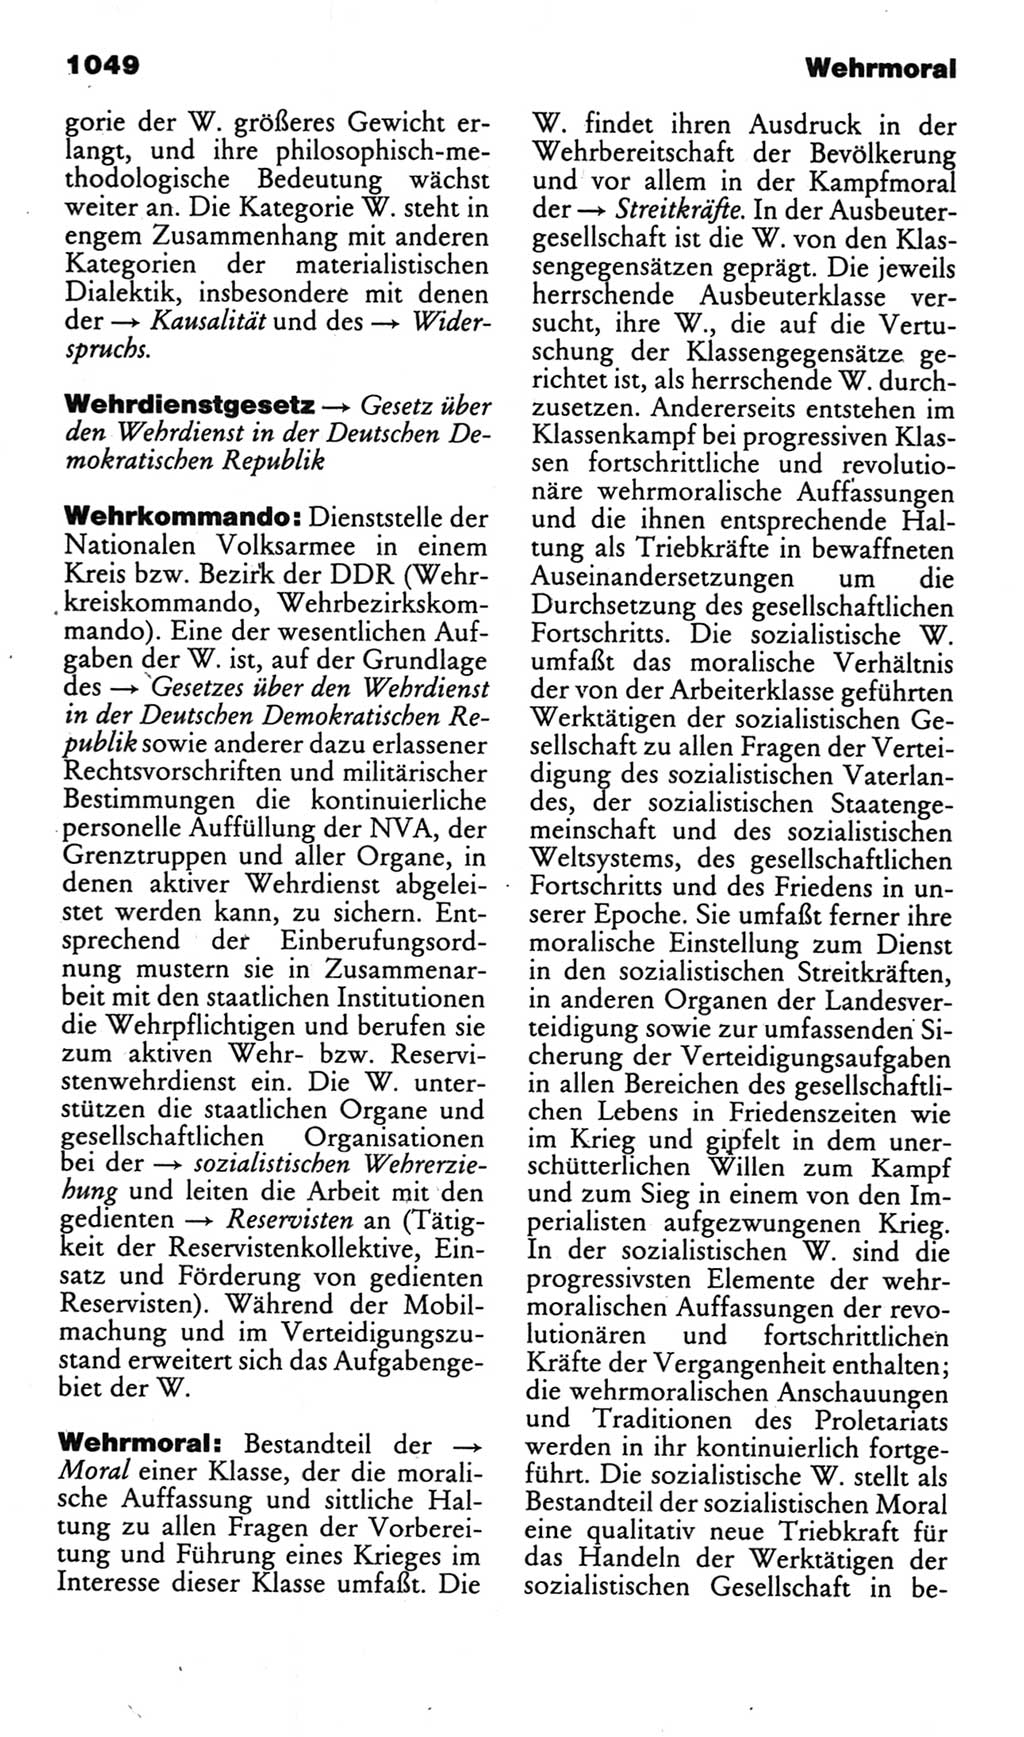 Kleines politisches Wörterbuch [Deutsche Demokratische Republik (DDR)] 1985, Seite 1049 (Kl. pol. Wb. DDR 1985, S. 1049)